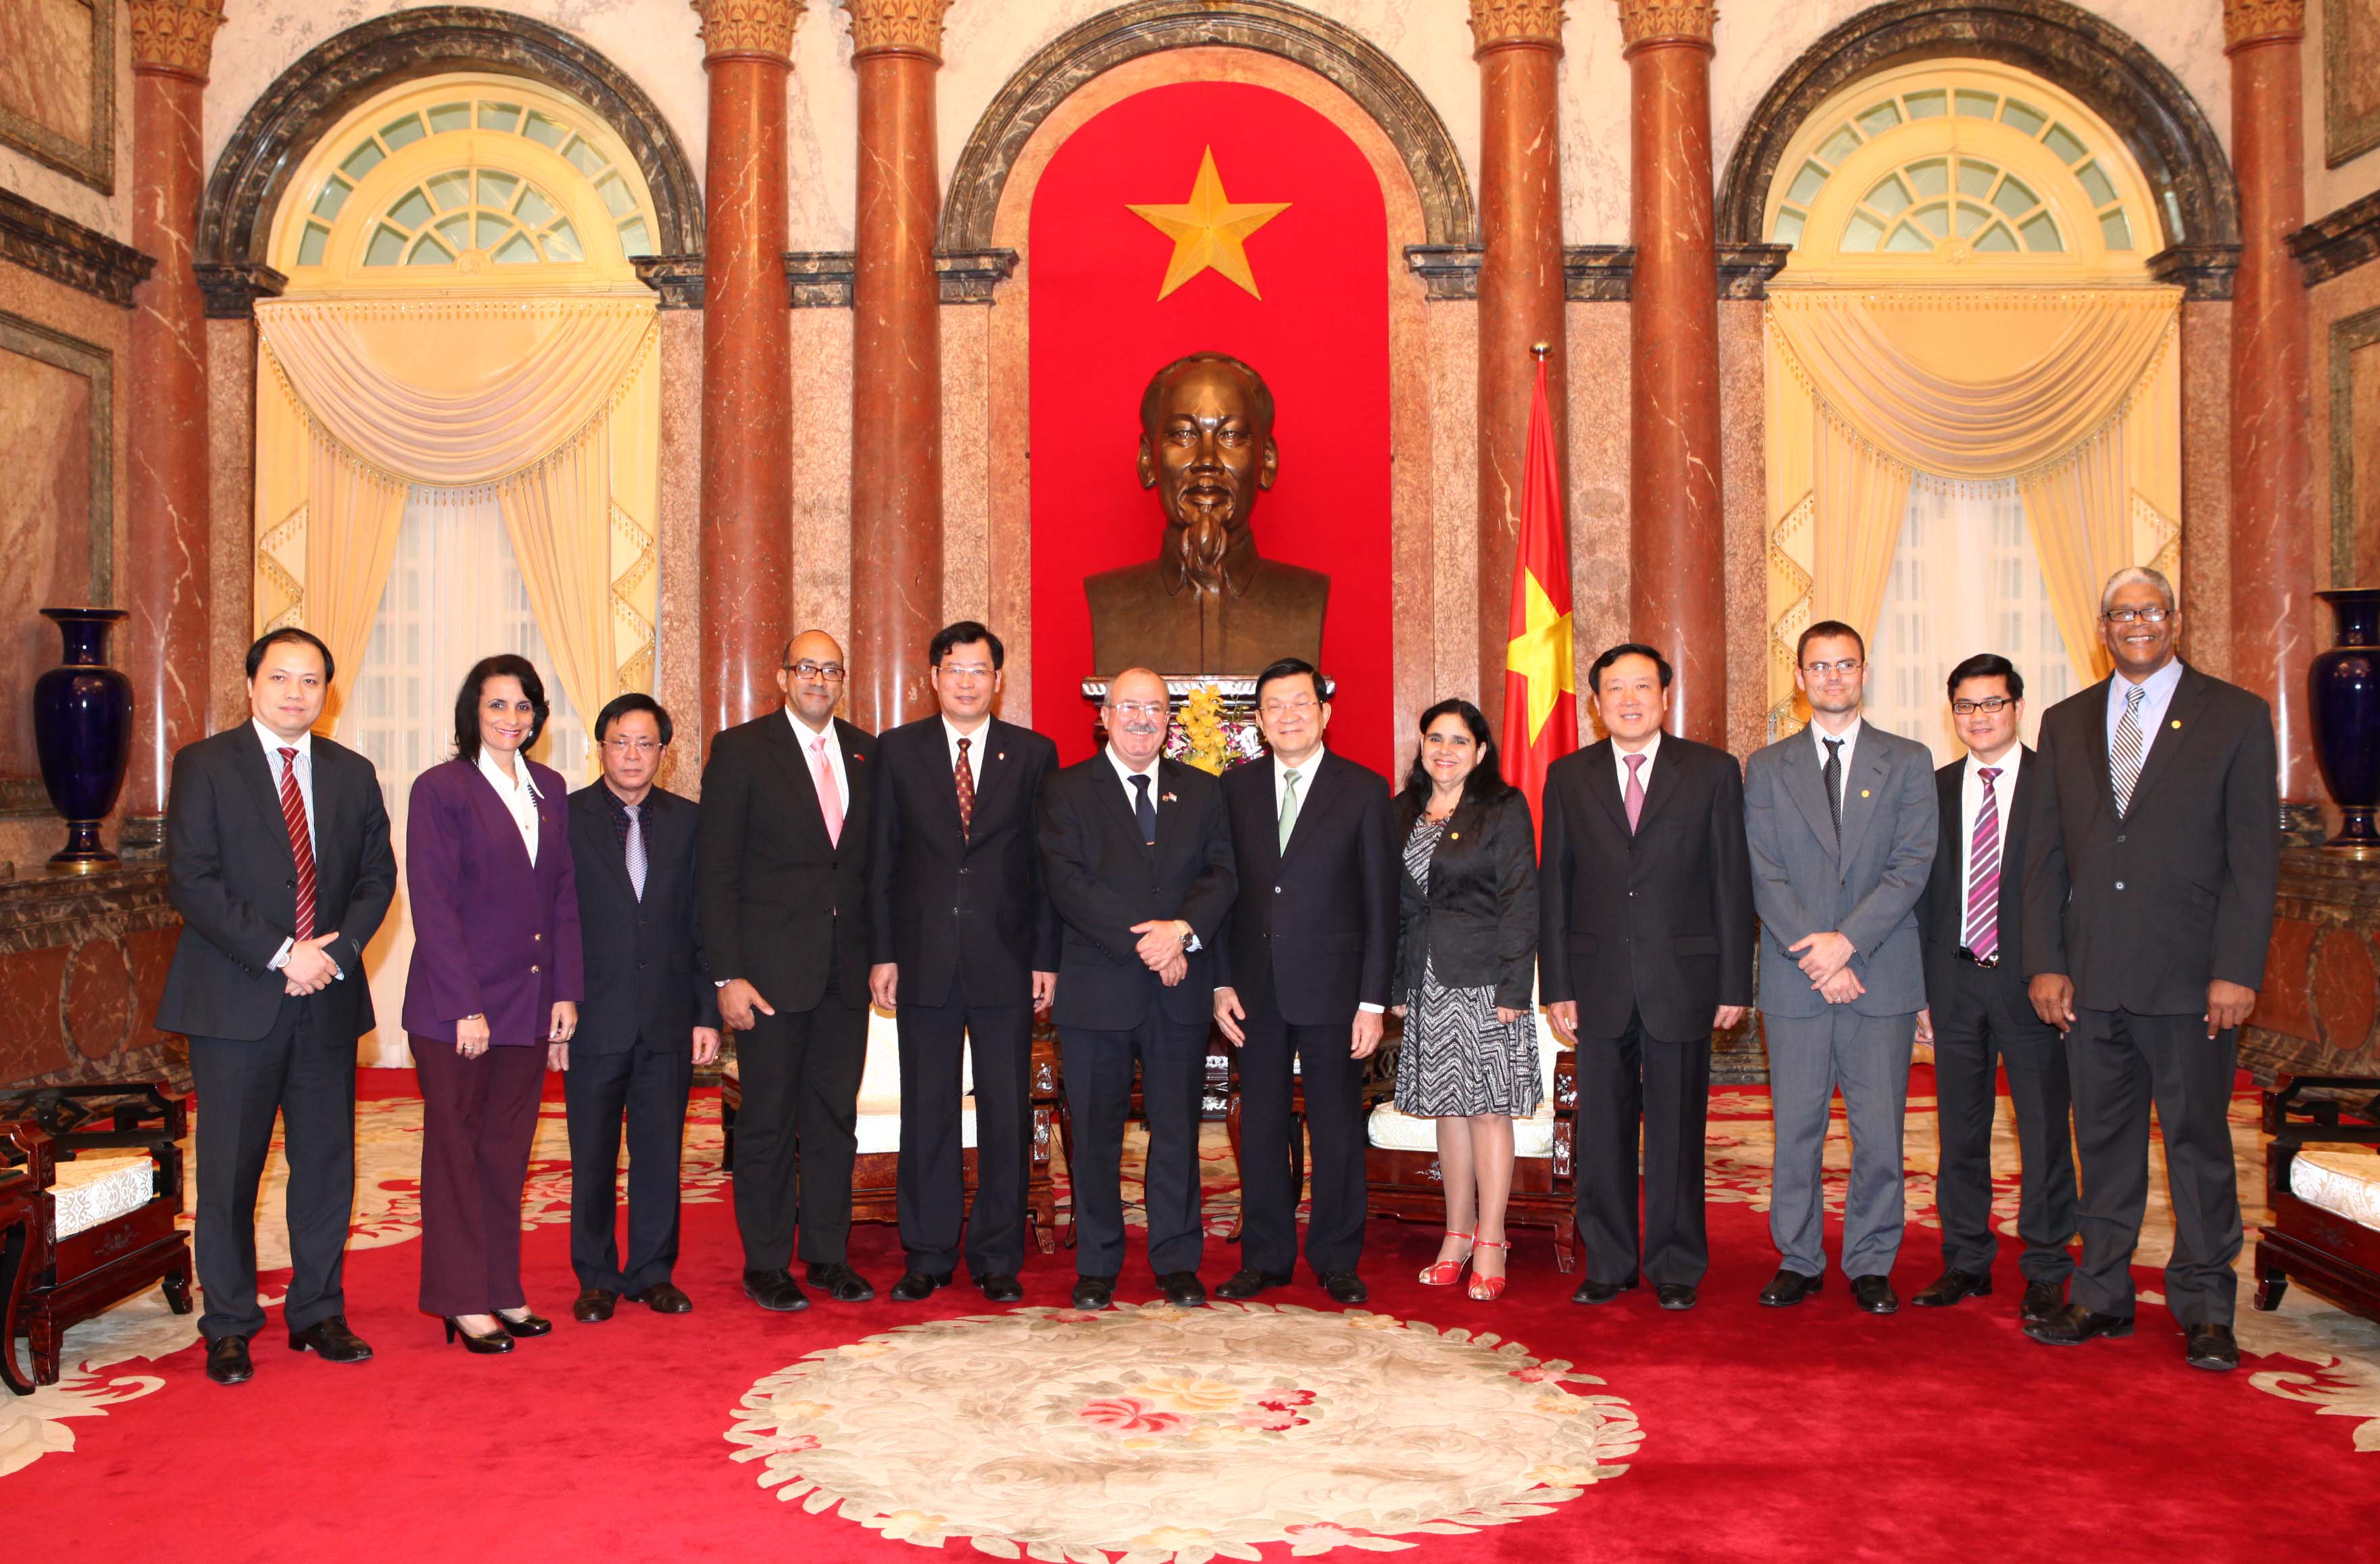 Đoàn đại biểu cấp cao Viện kiểm sát tối cao Cuba chụp ảnh lưu niệm cùng Chủ tịch nước Trương Tấn Sang và Lãnh đạo VKSNDTC